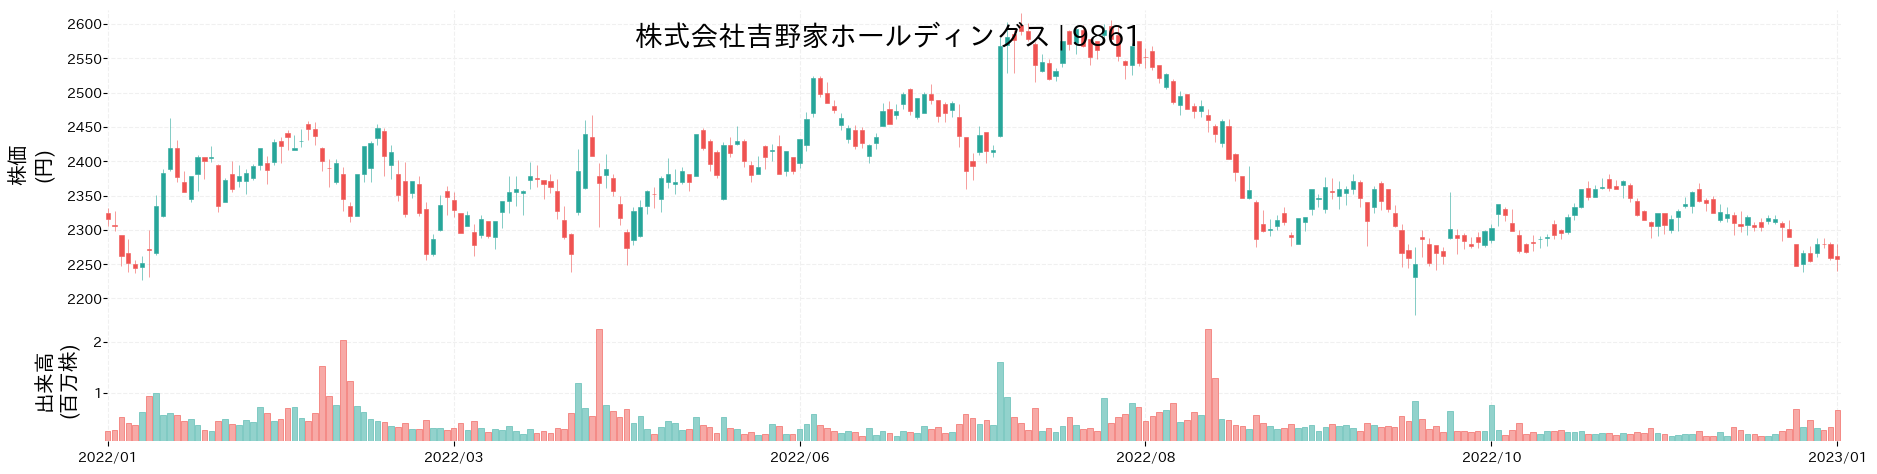 吉野家ホールディングスの株価推移(2022)